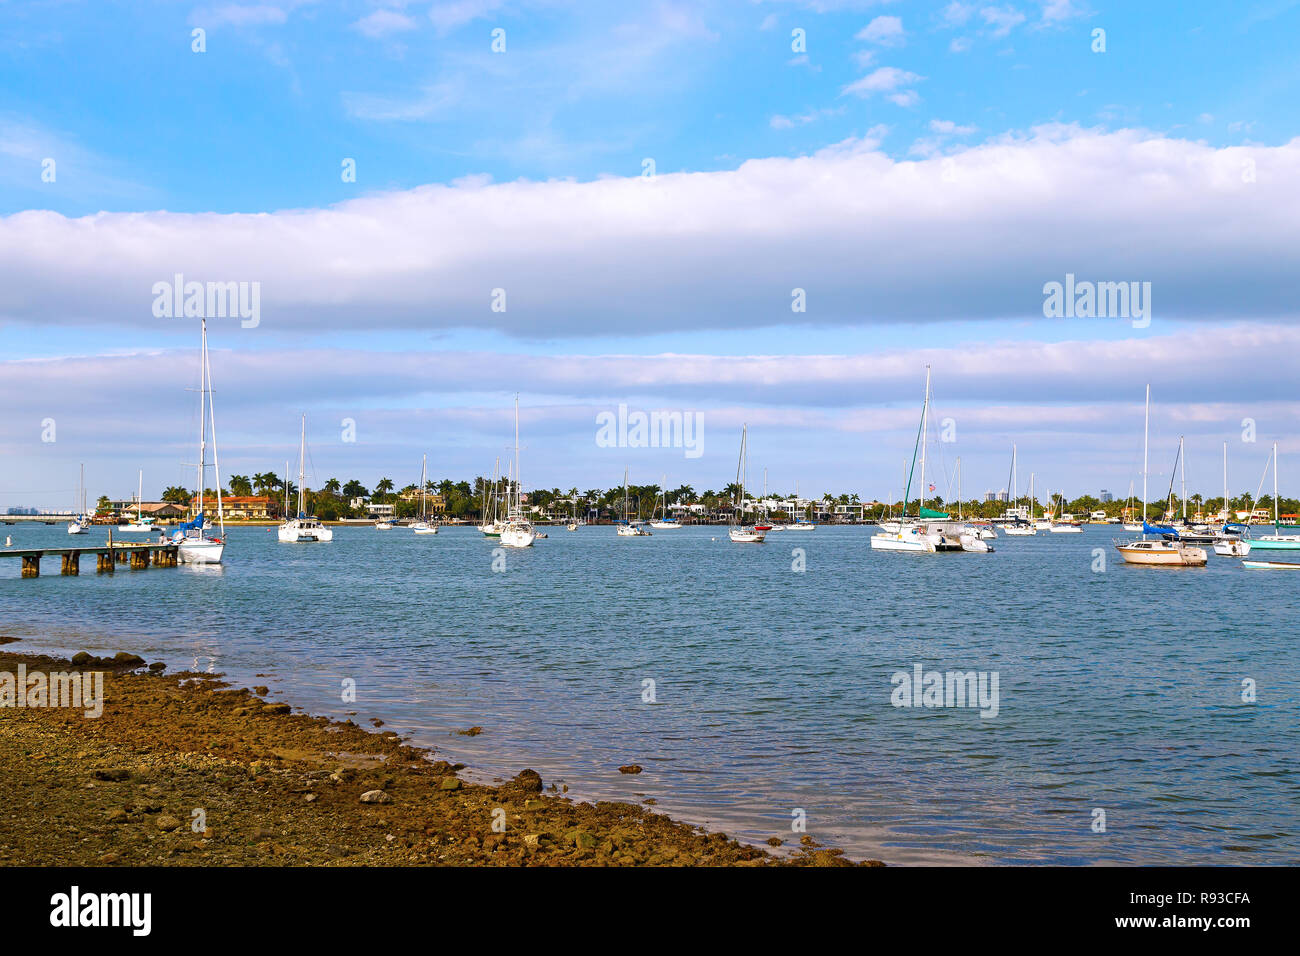 Yachts ancrés dans les eaux calmes de Miami city marina. Nuages et soleil à marina de Miami, en Floride. Banque D'Images